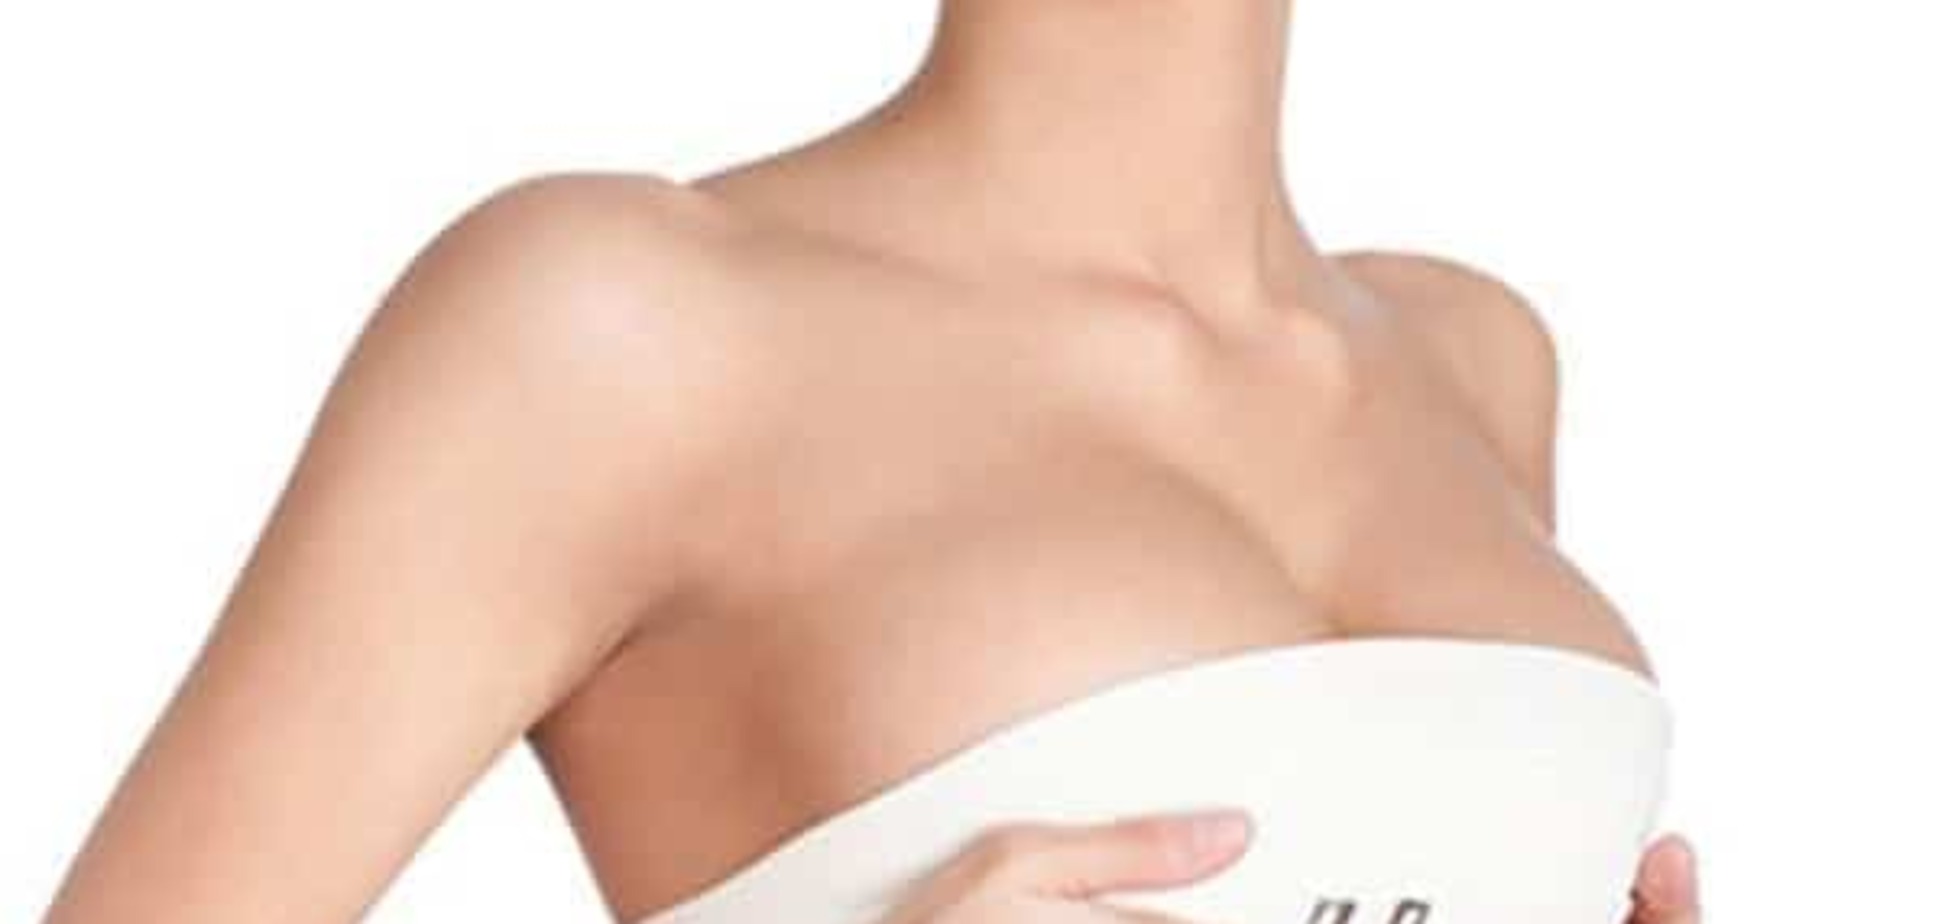 Коррекция асимметрии женской груди - мнение эксперта